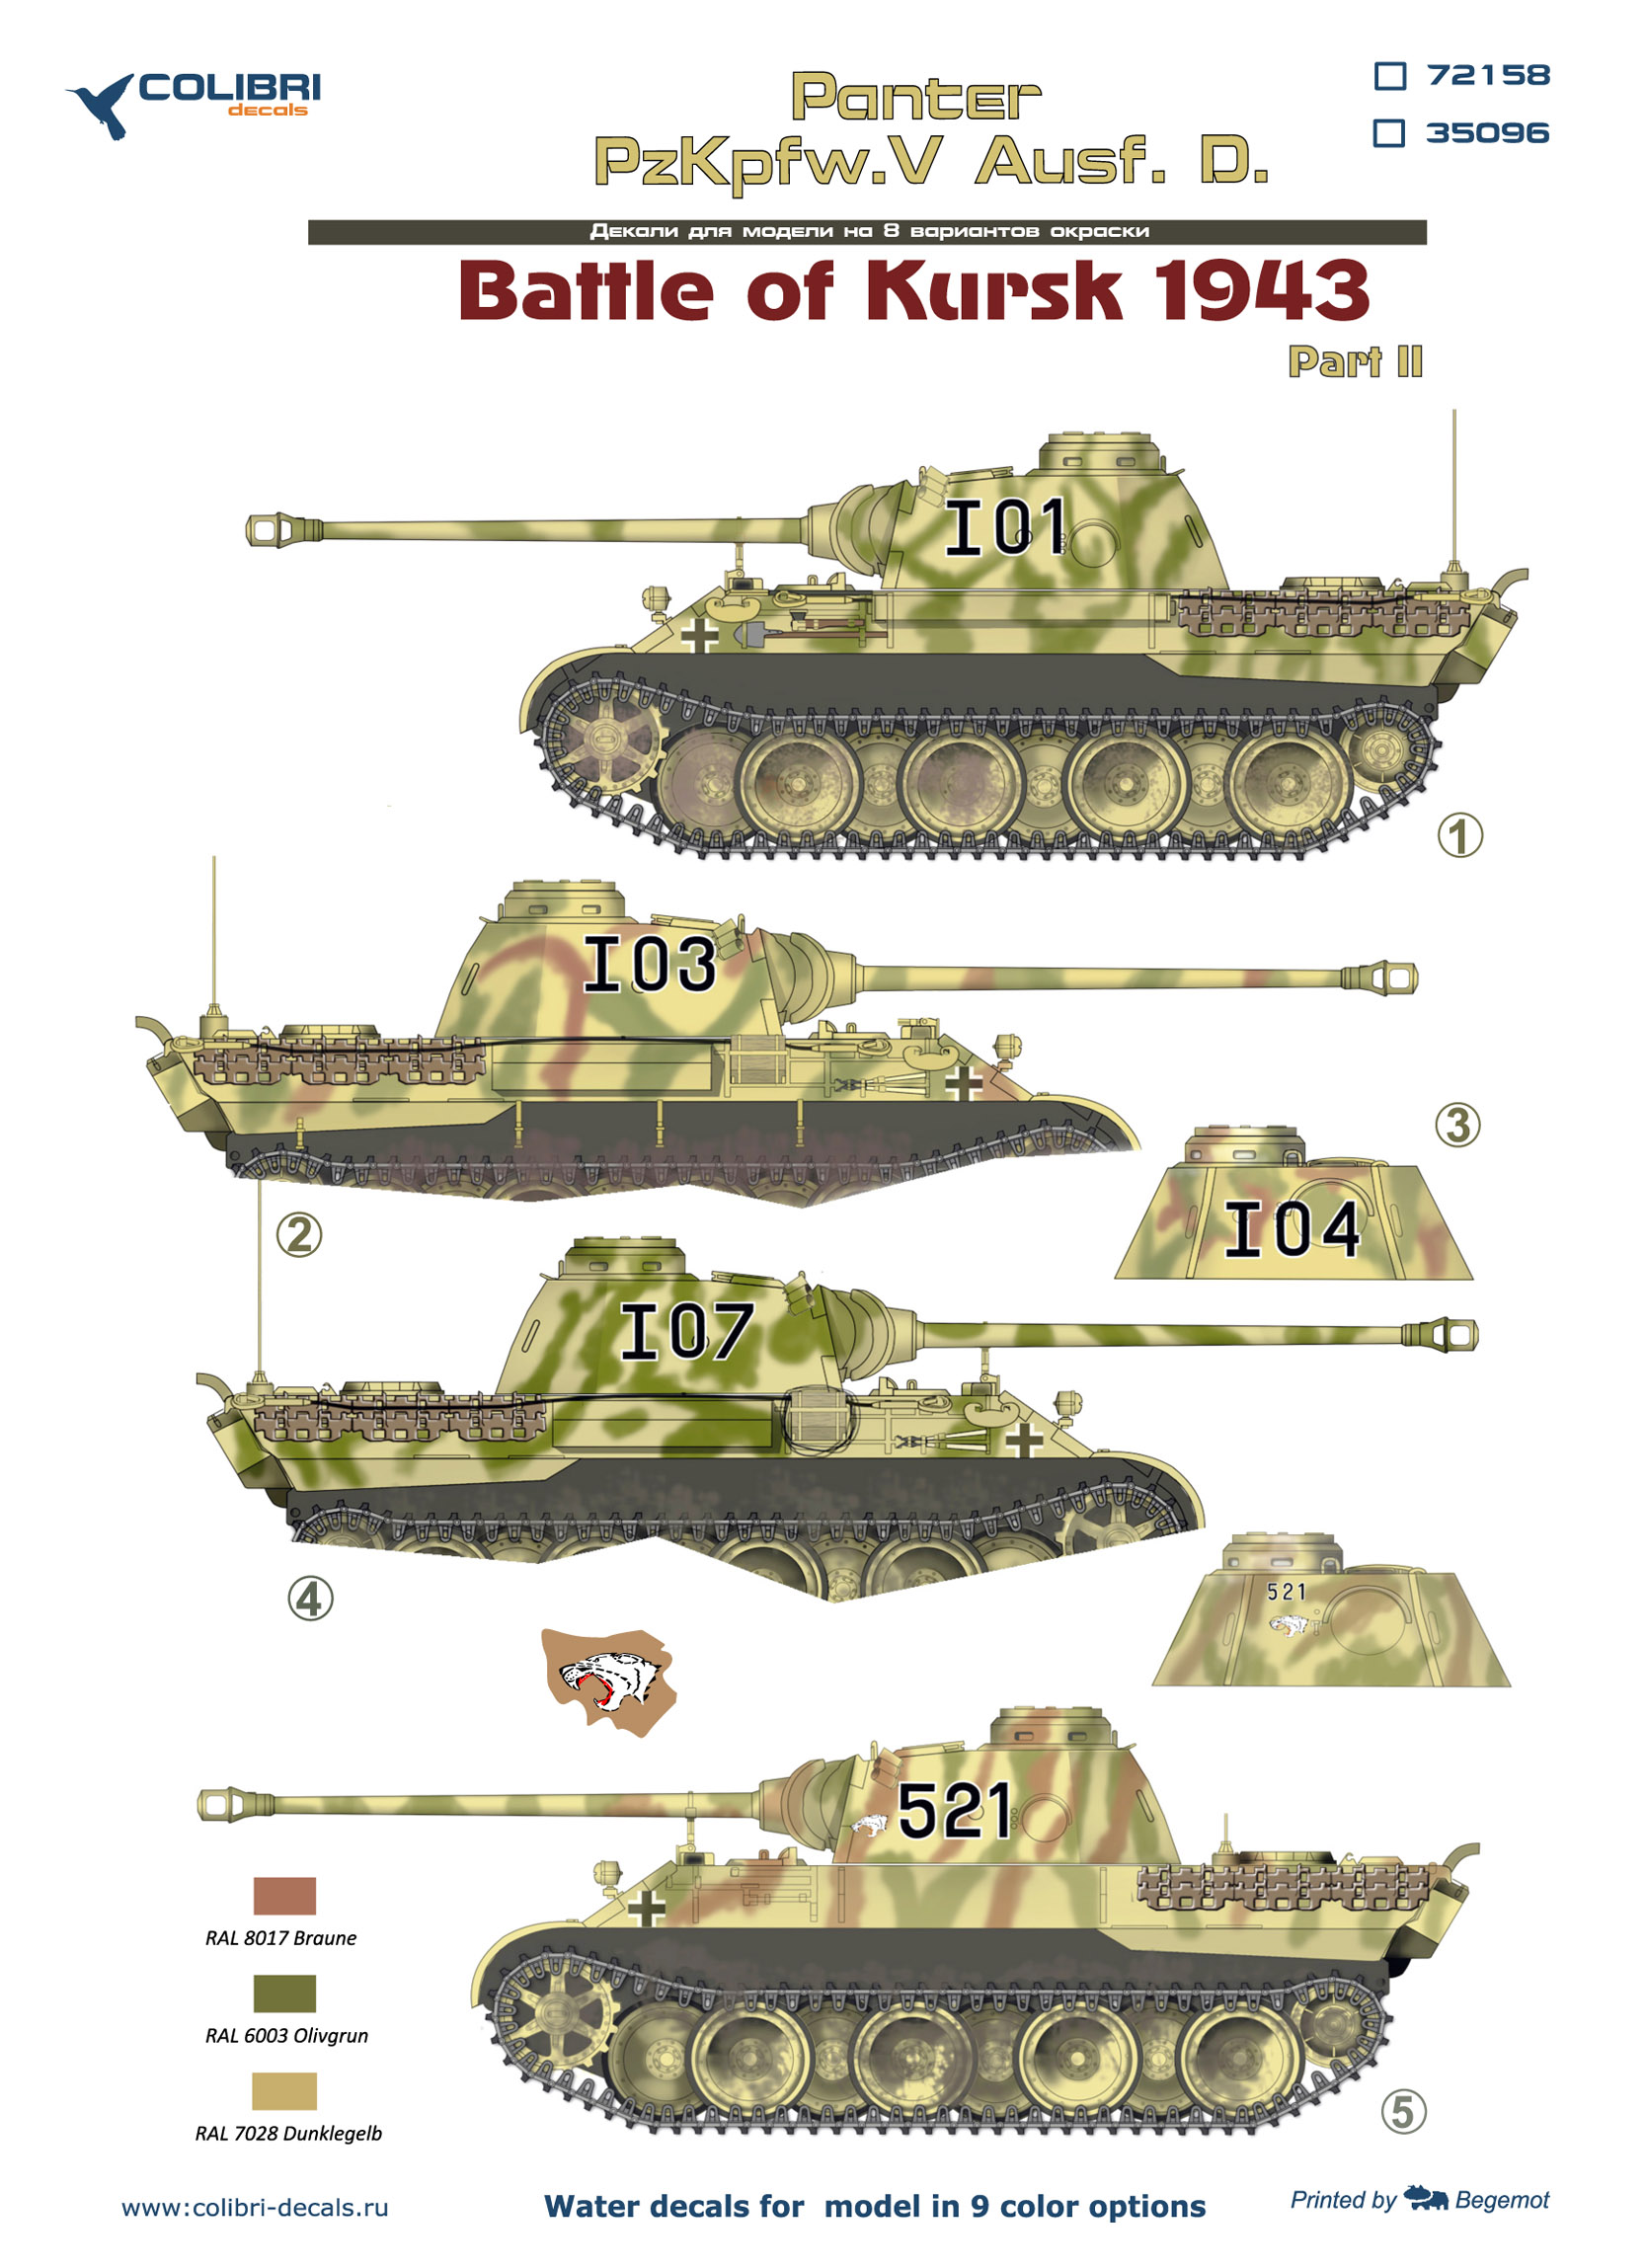 Декаль 1/35 Pz.Kpfw.V Panter Ausf. D Battle of Kursk1943 - Part II (Colibri Decals)